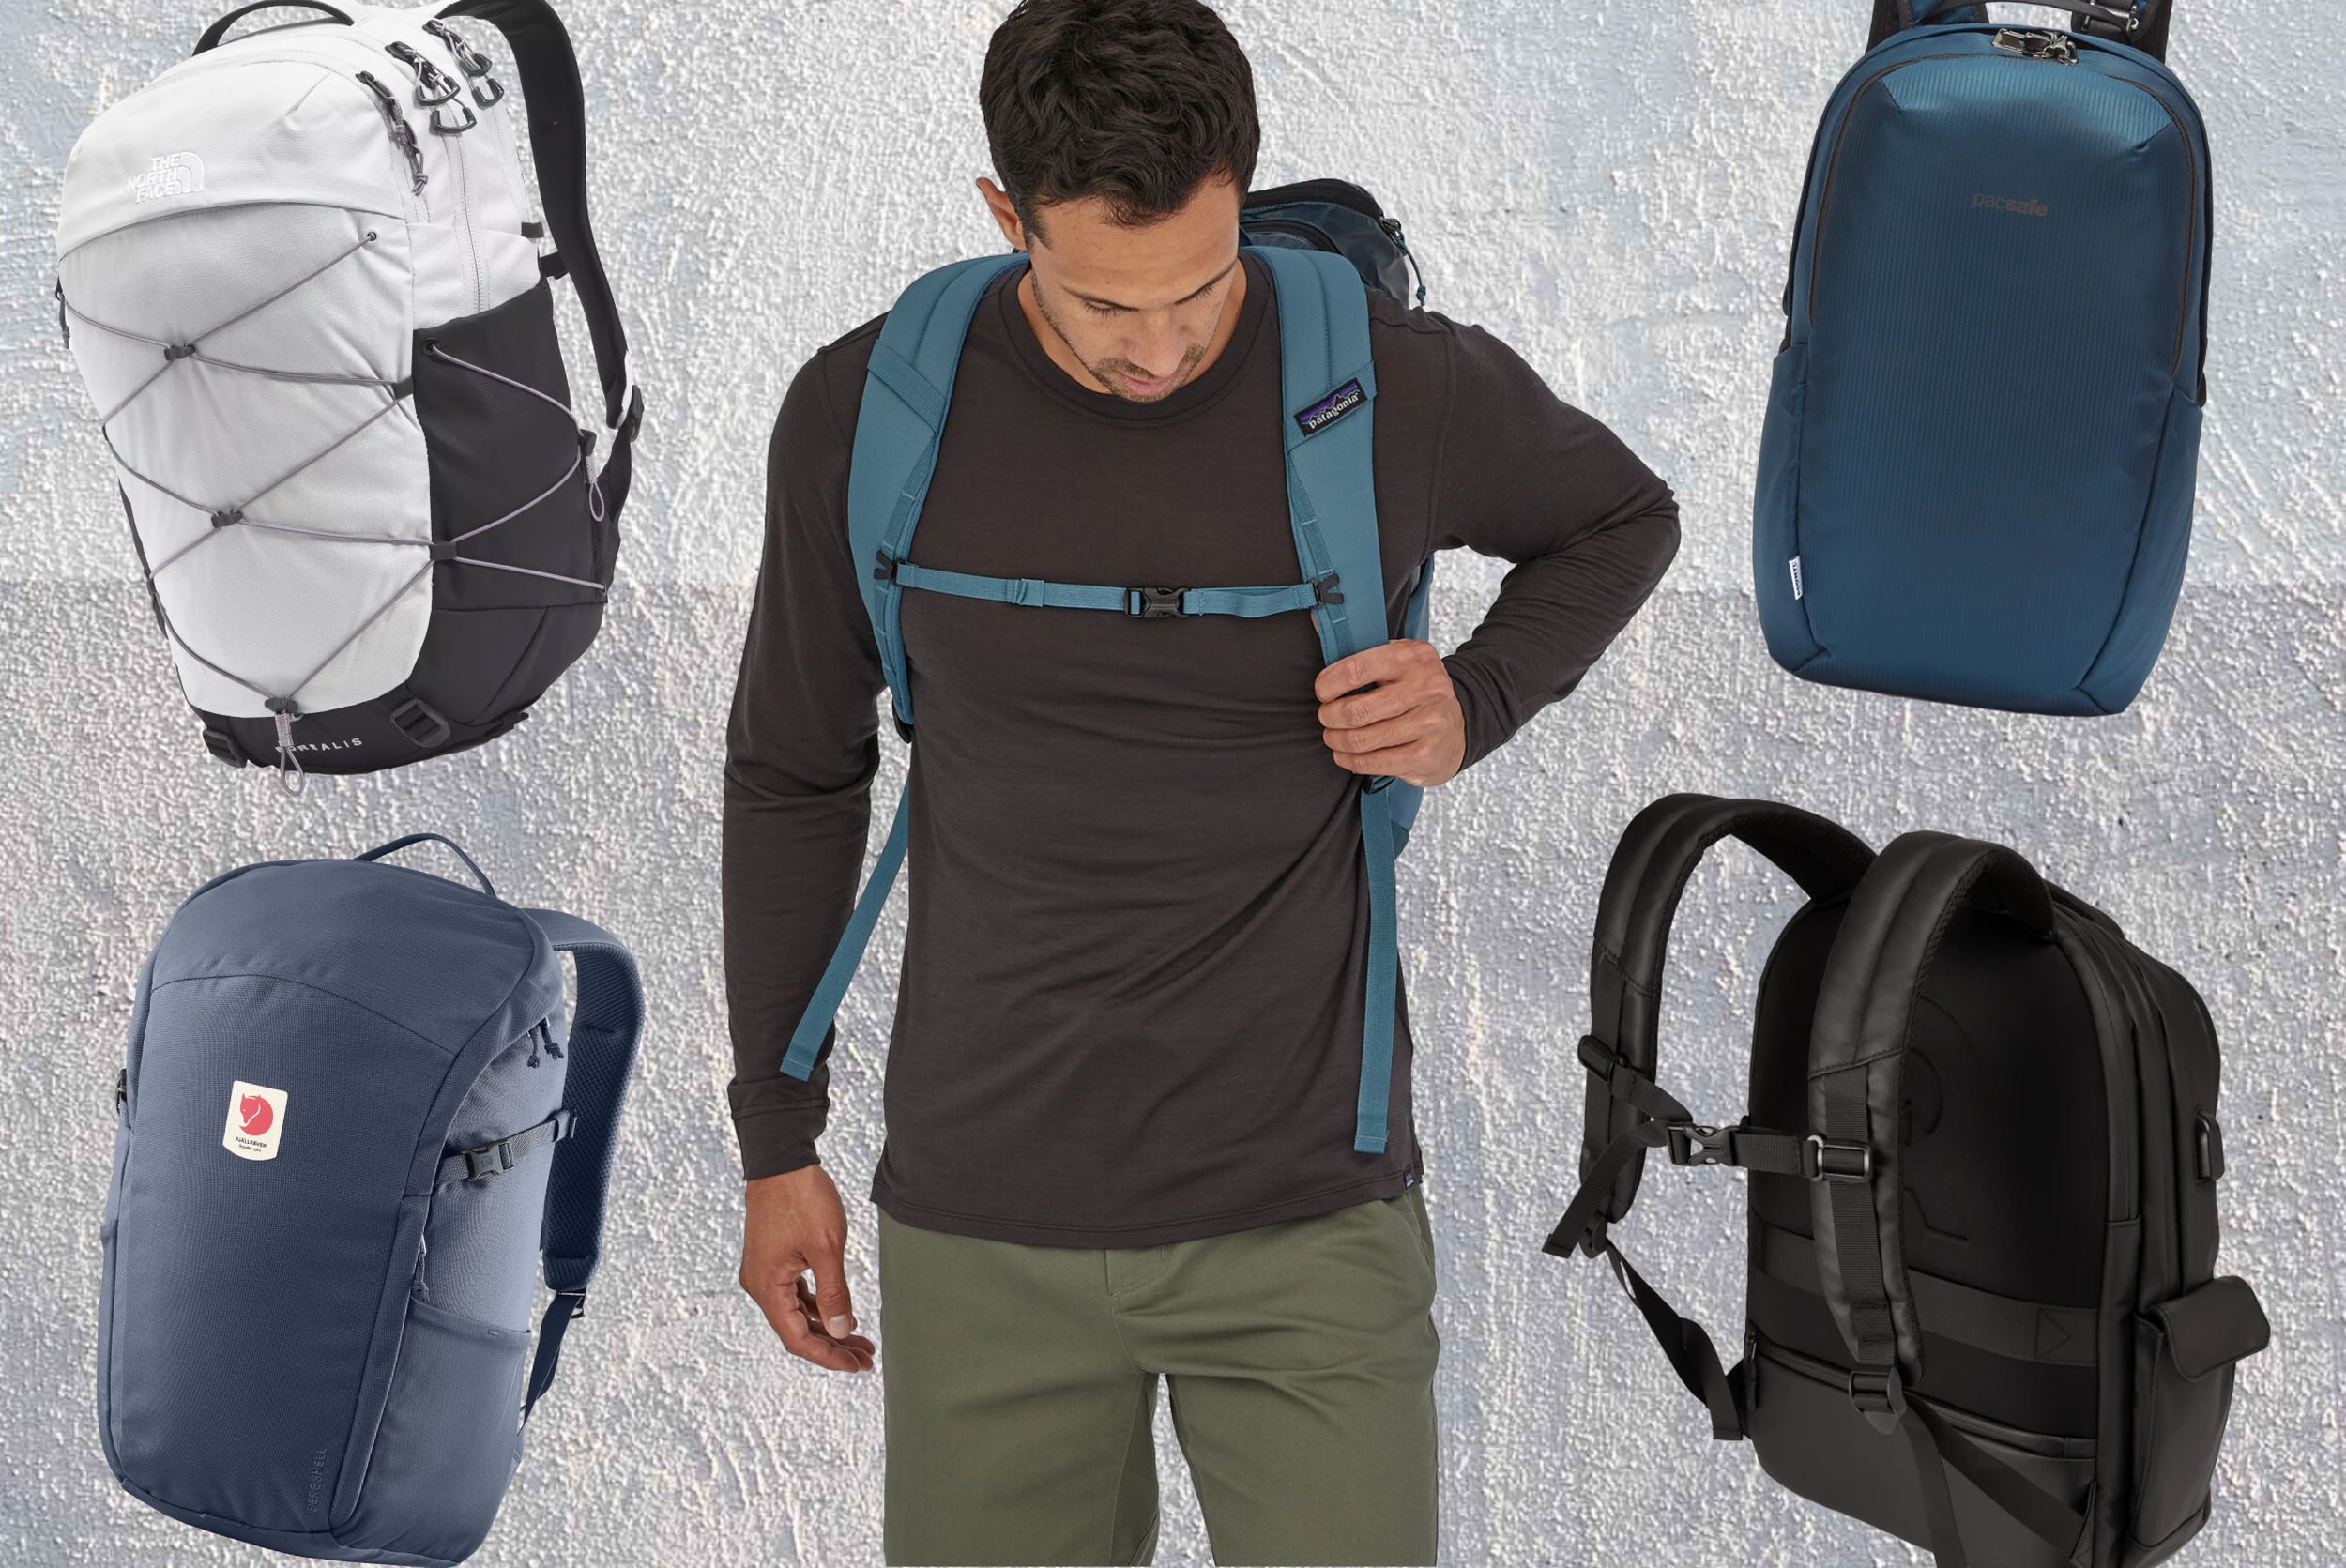 Men’s Backpack Rucksack Bag Sports Gym Work Travel School Hiking Cabin Bag Case